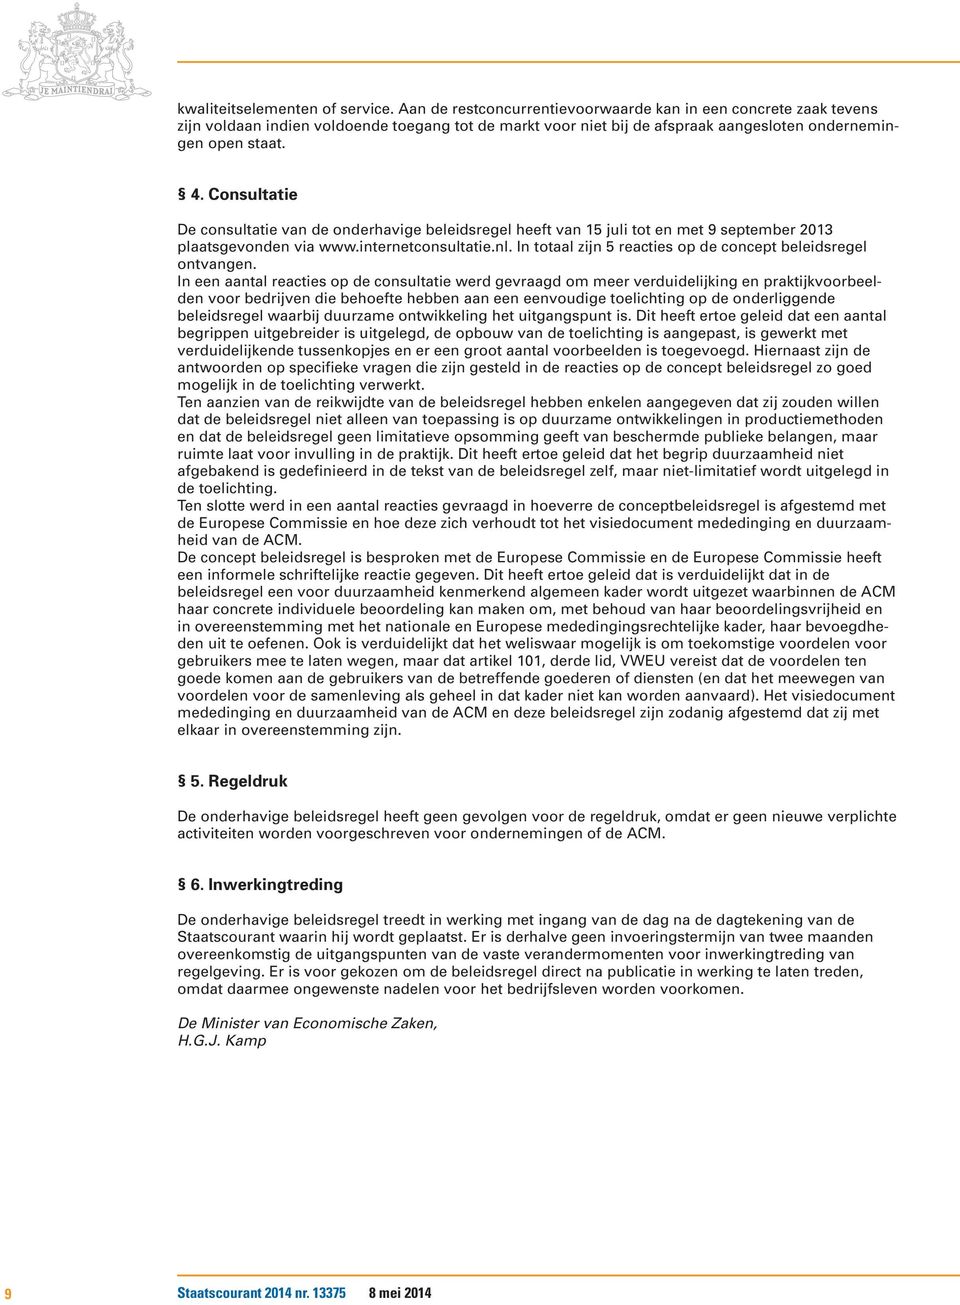 Consultatie De consultatie van de onderhavige beleidsregel heeft van 15 juli tot en met 9 september 2013 plaatsgevonden via www.internetconsultatie.nl.